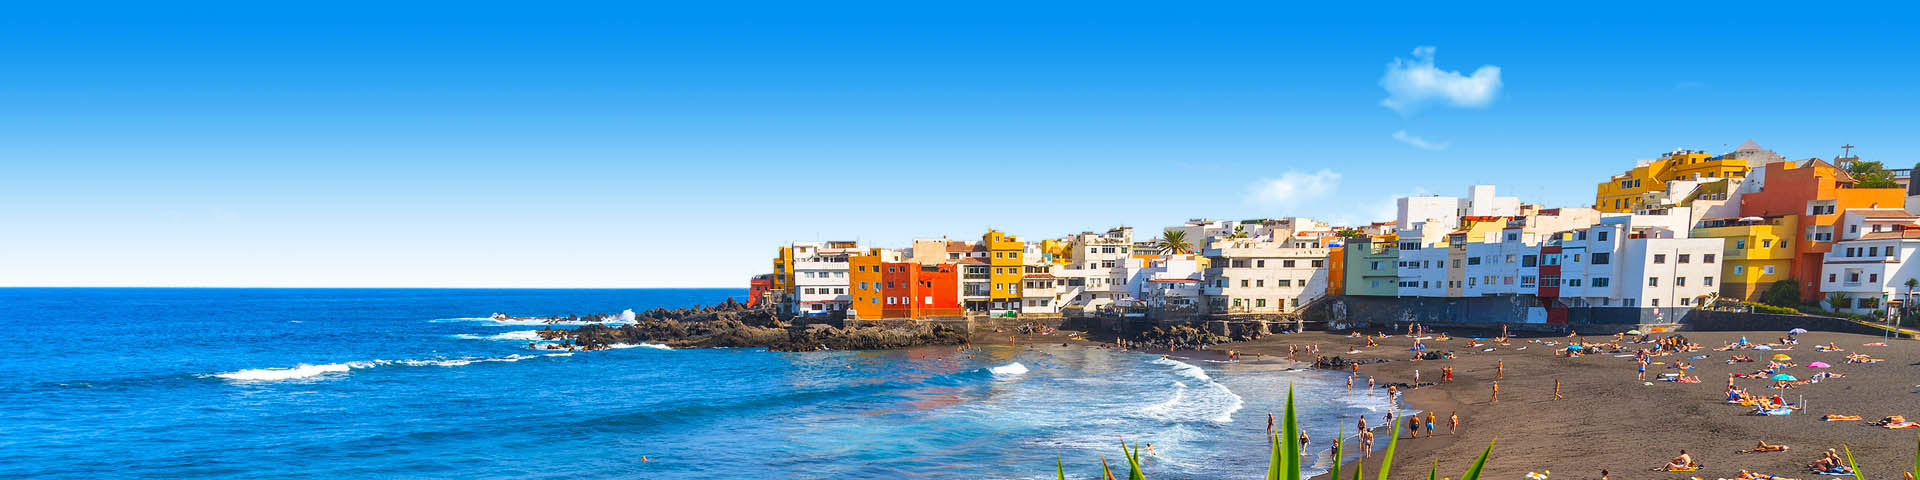 De zee en gekleurde huisjes in Puerto de la Cruz 